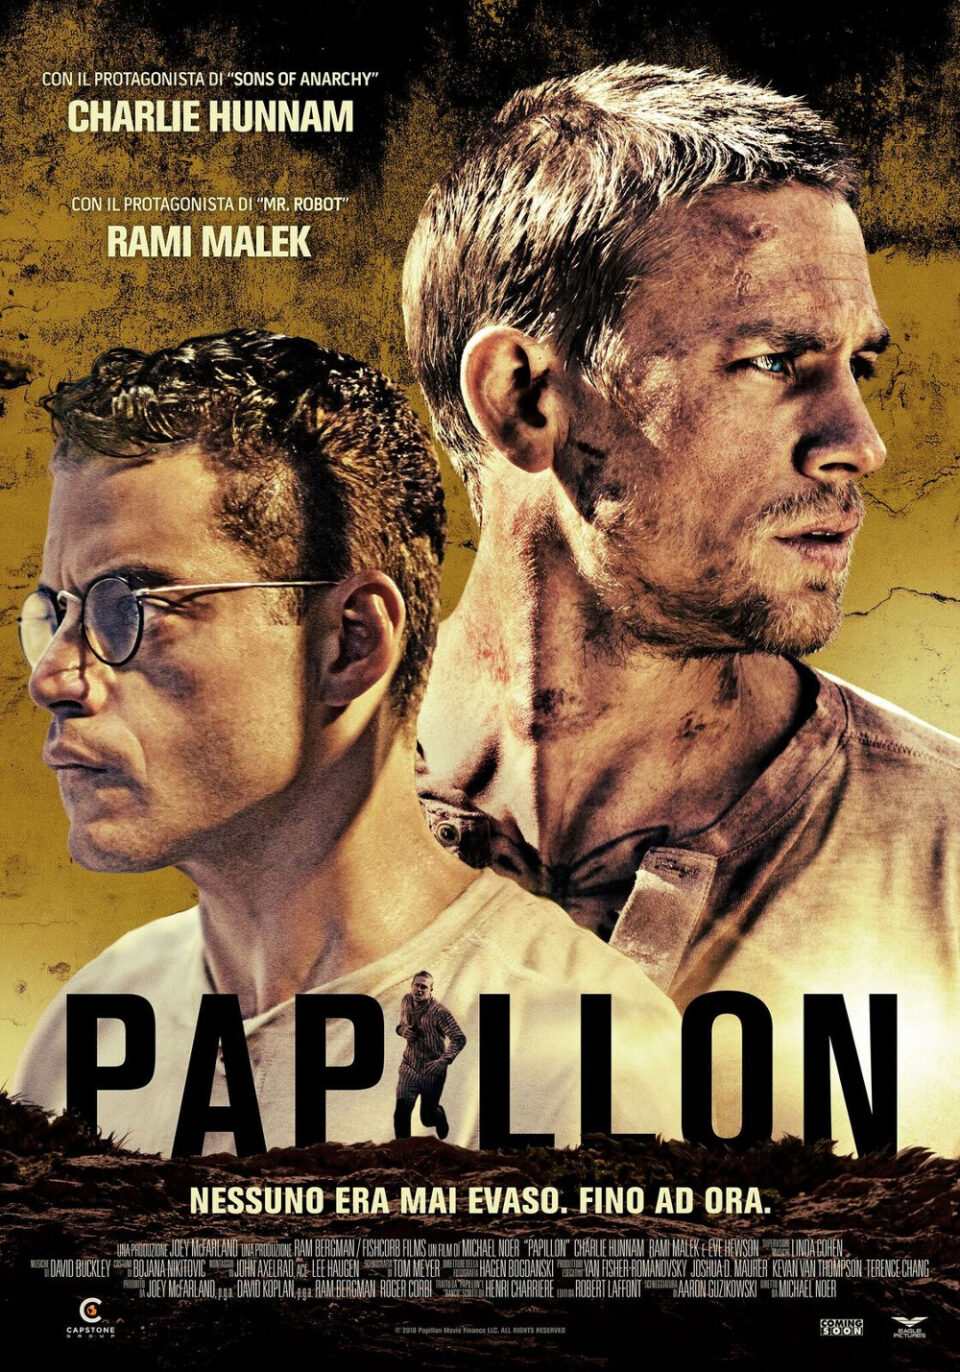 Film Tv giovedì 28 ottobre. Papillon: il remake su Rai 3
La recensione del film su VigilanzaTv